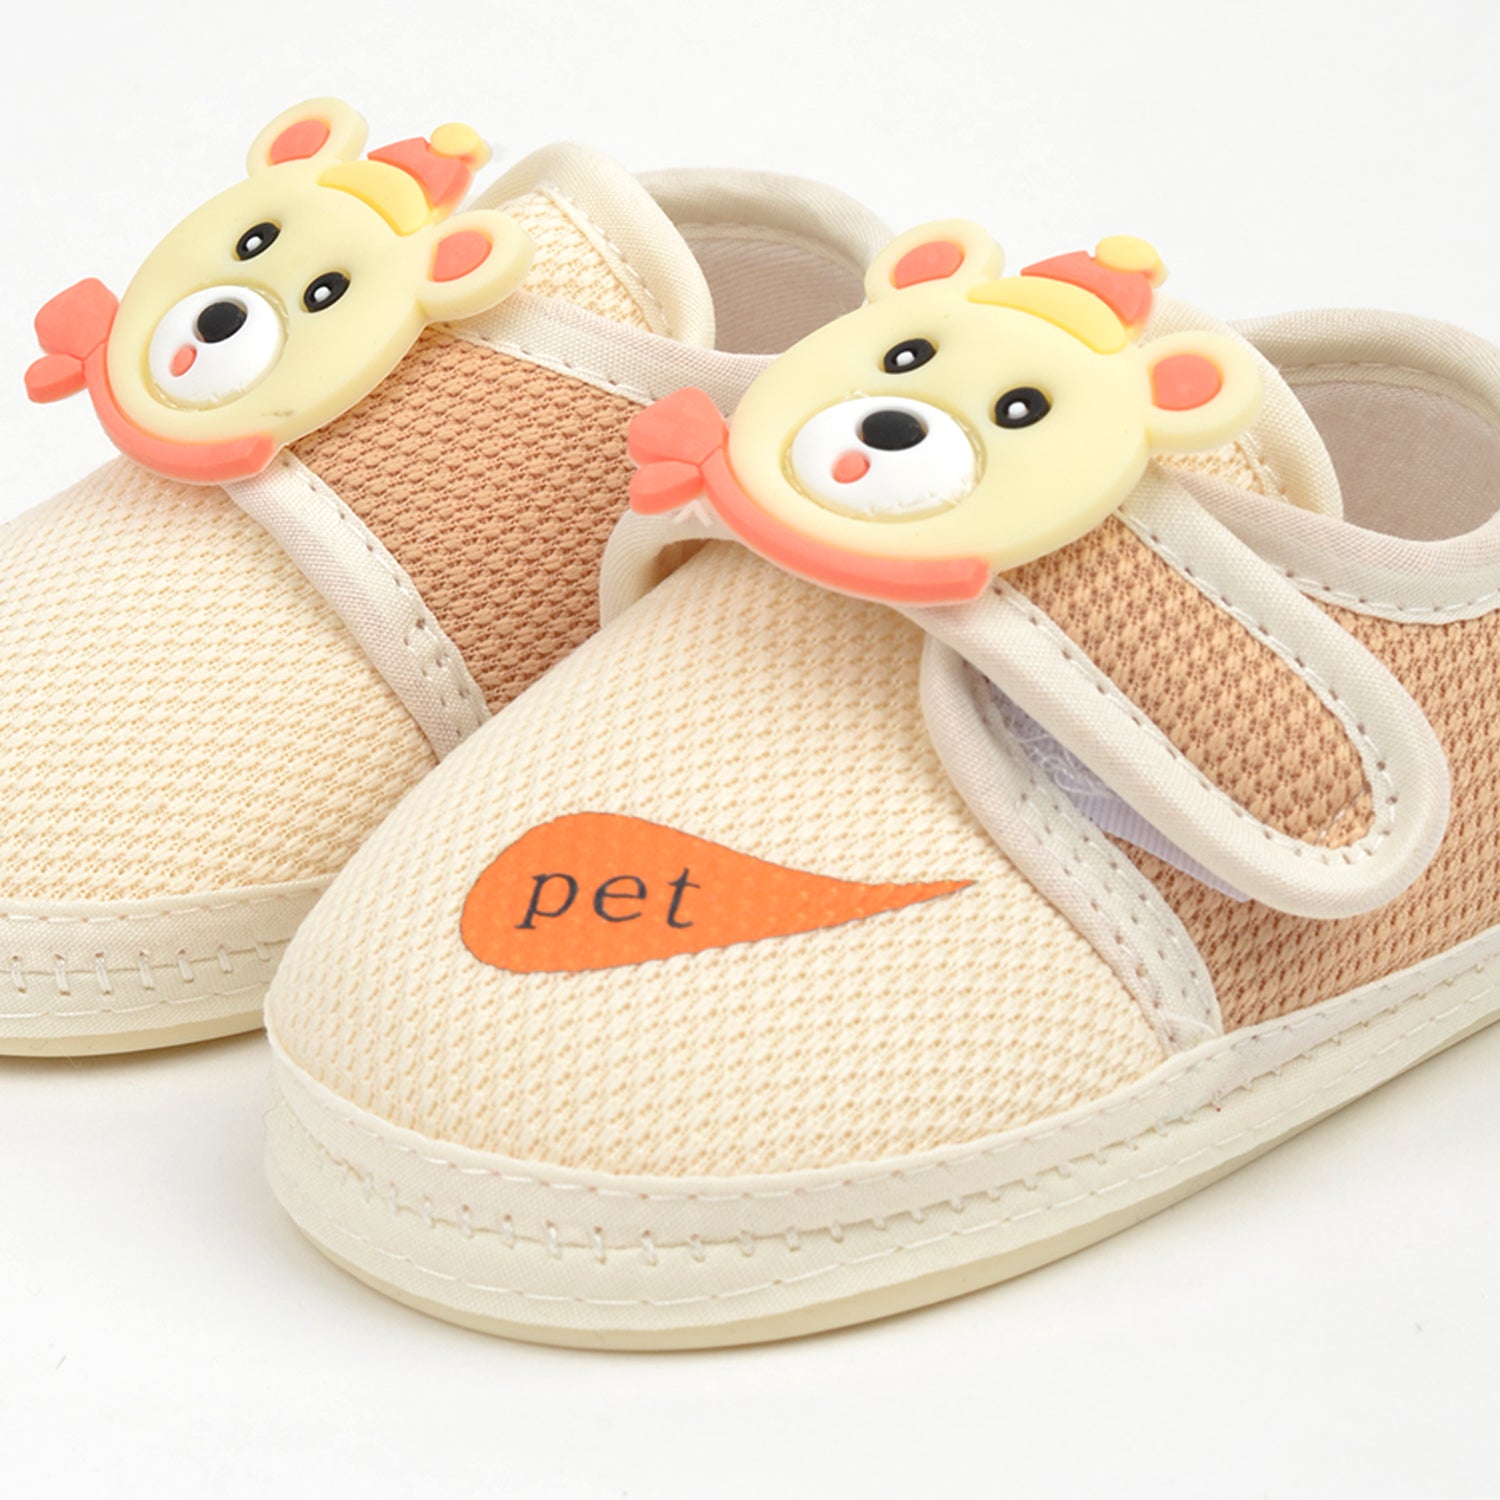 Footprints unisex baby soft  & trendy botties |Brown